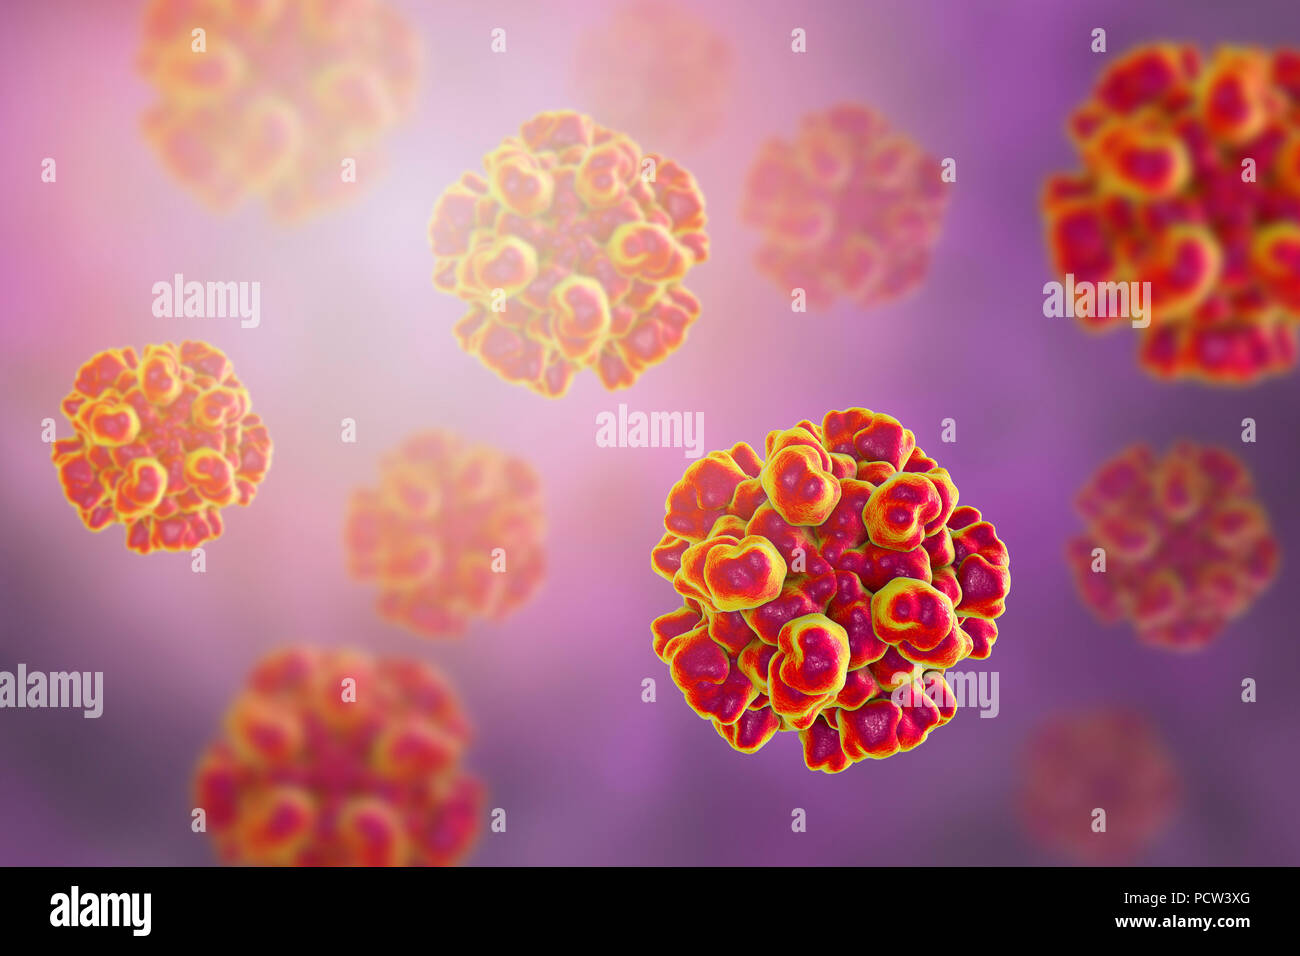 Epatite e virus hev immagini e fotografie stock ad alta risoluzione - Alamy